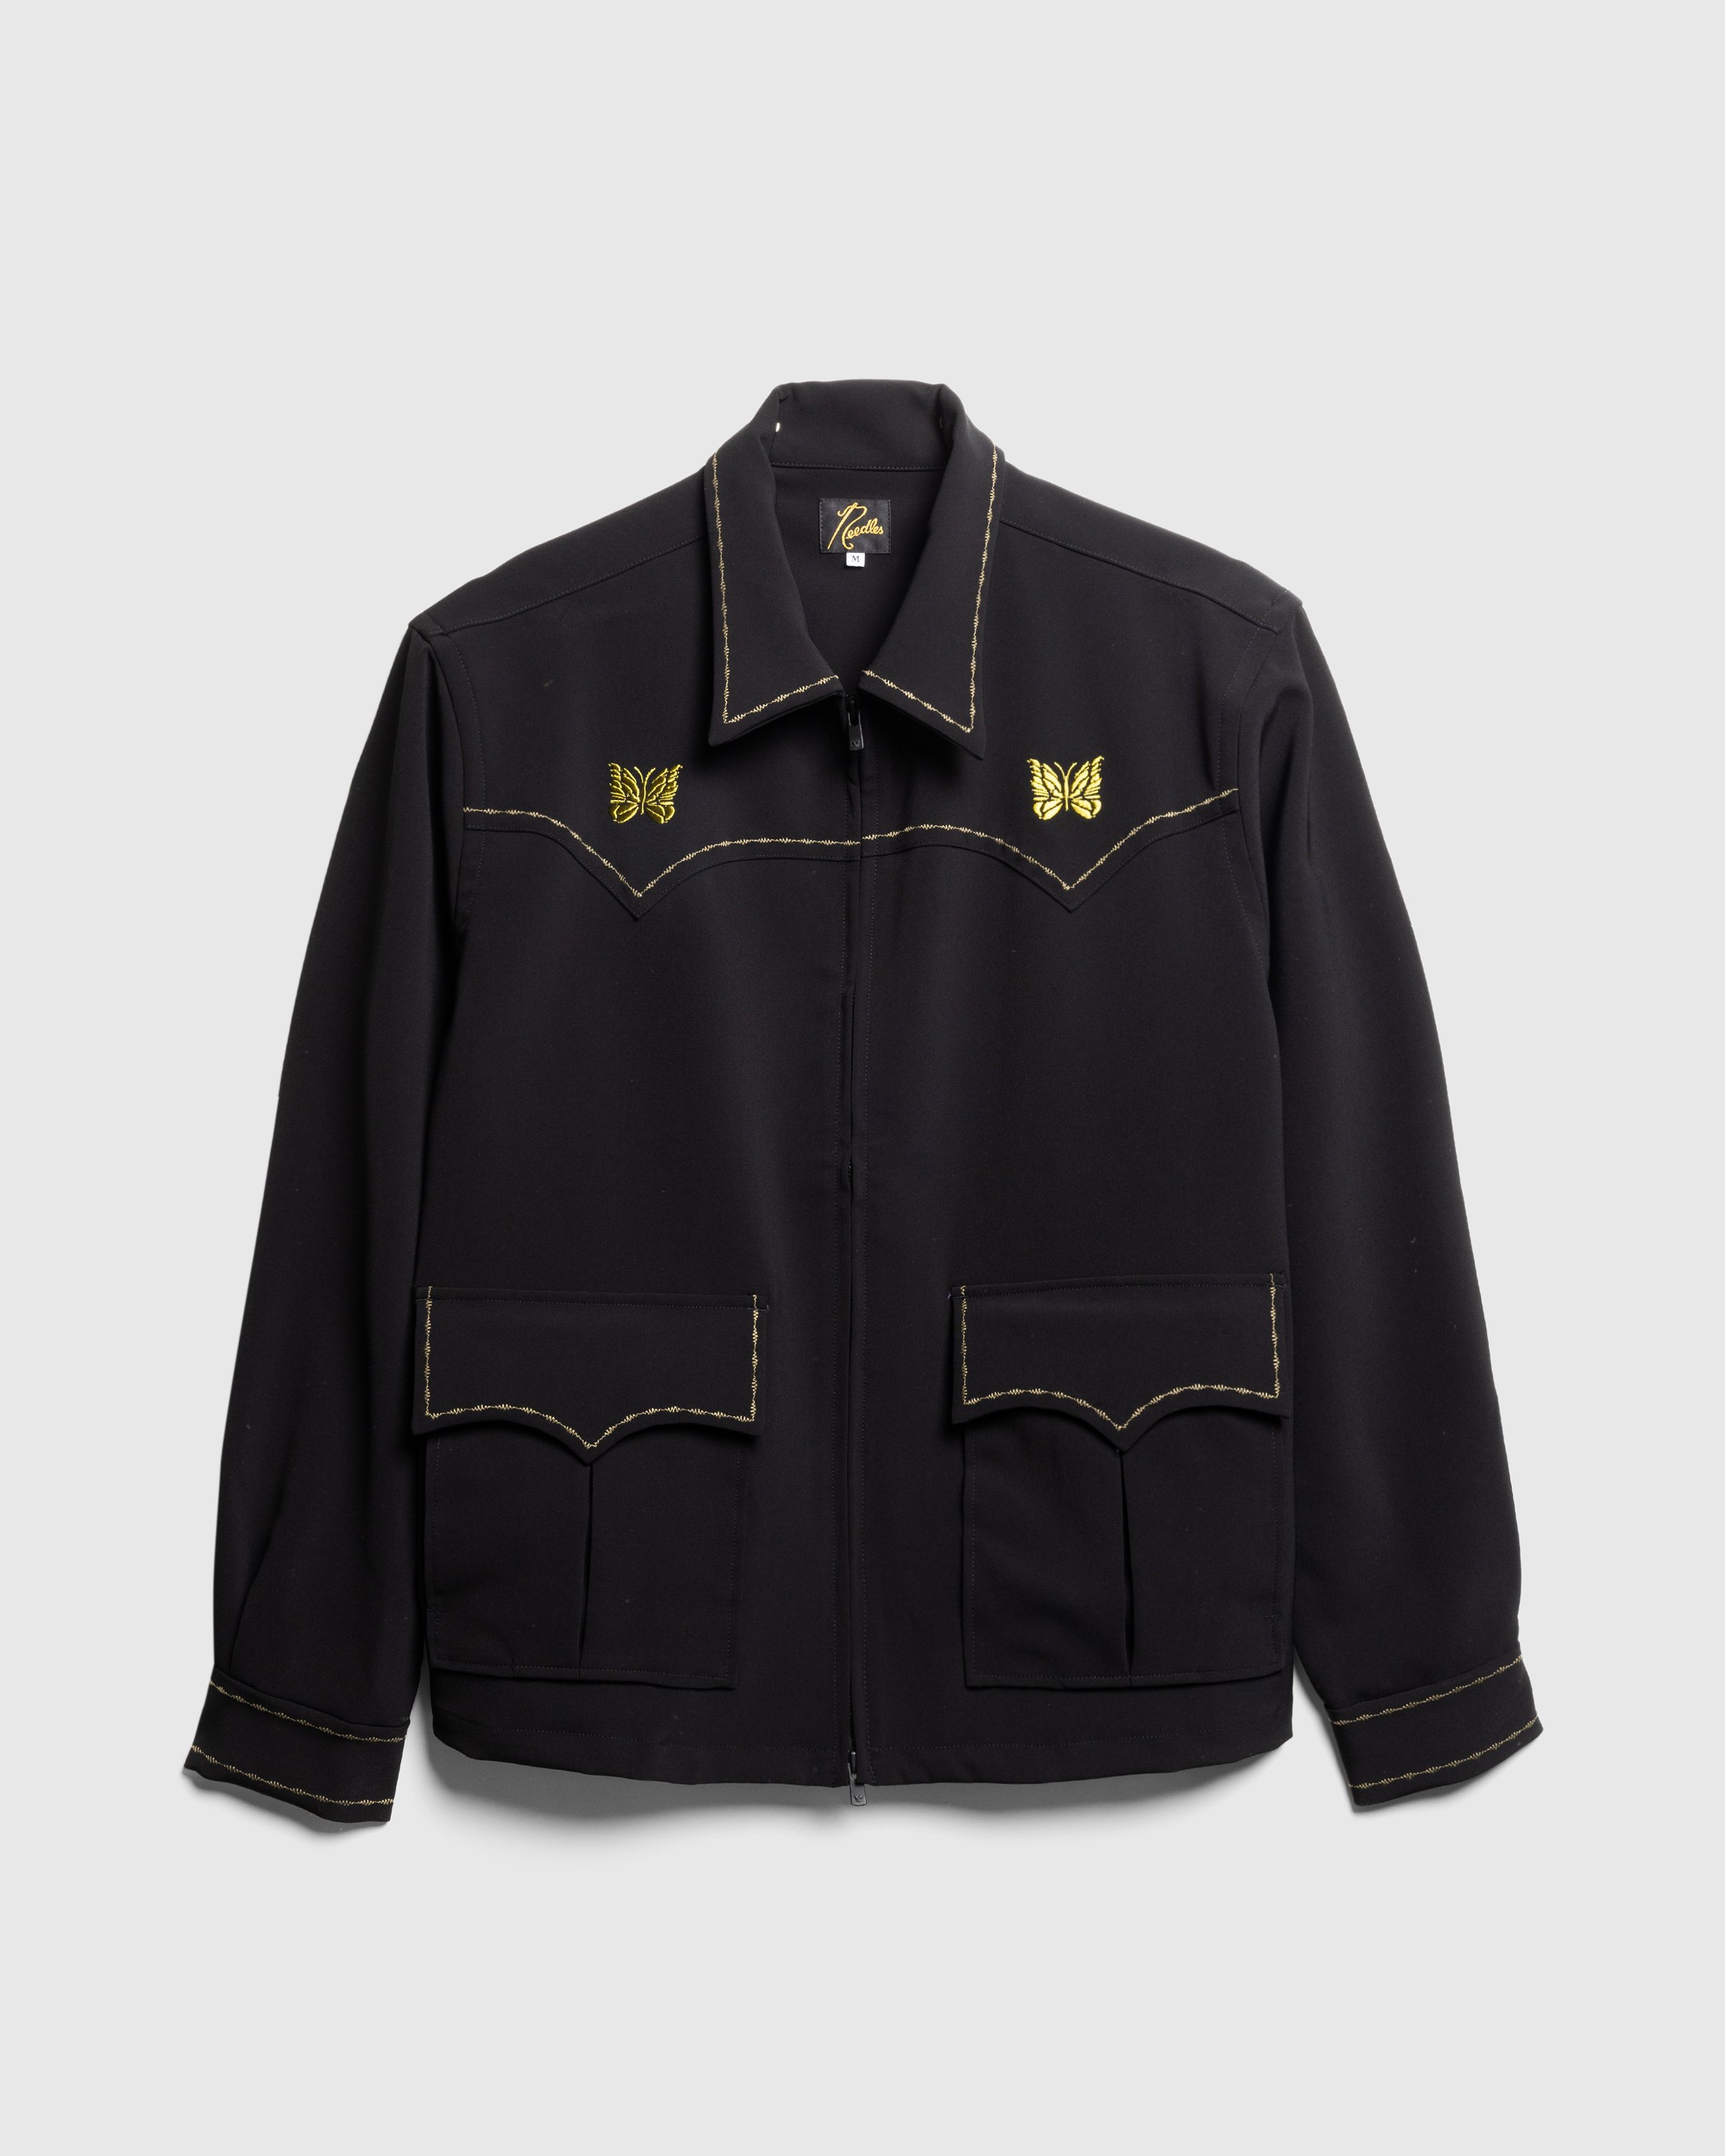 Needles - Western Sport Jacket - PE/PU Double Cloth - Clothing - Black - Image 1